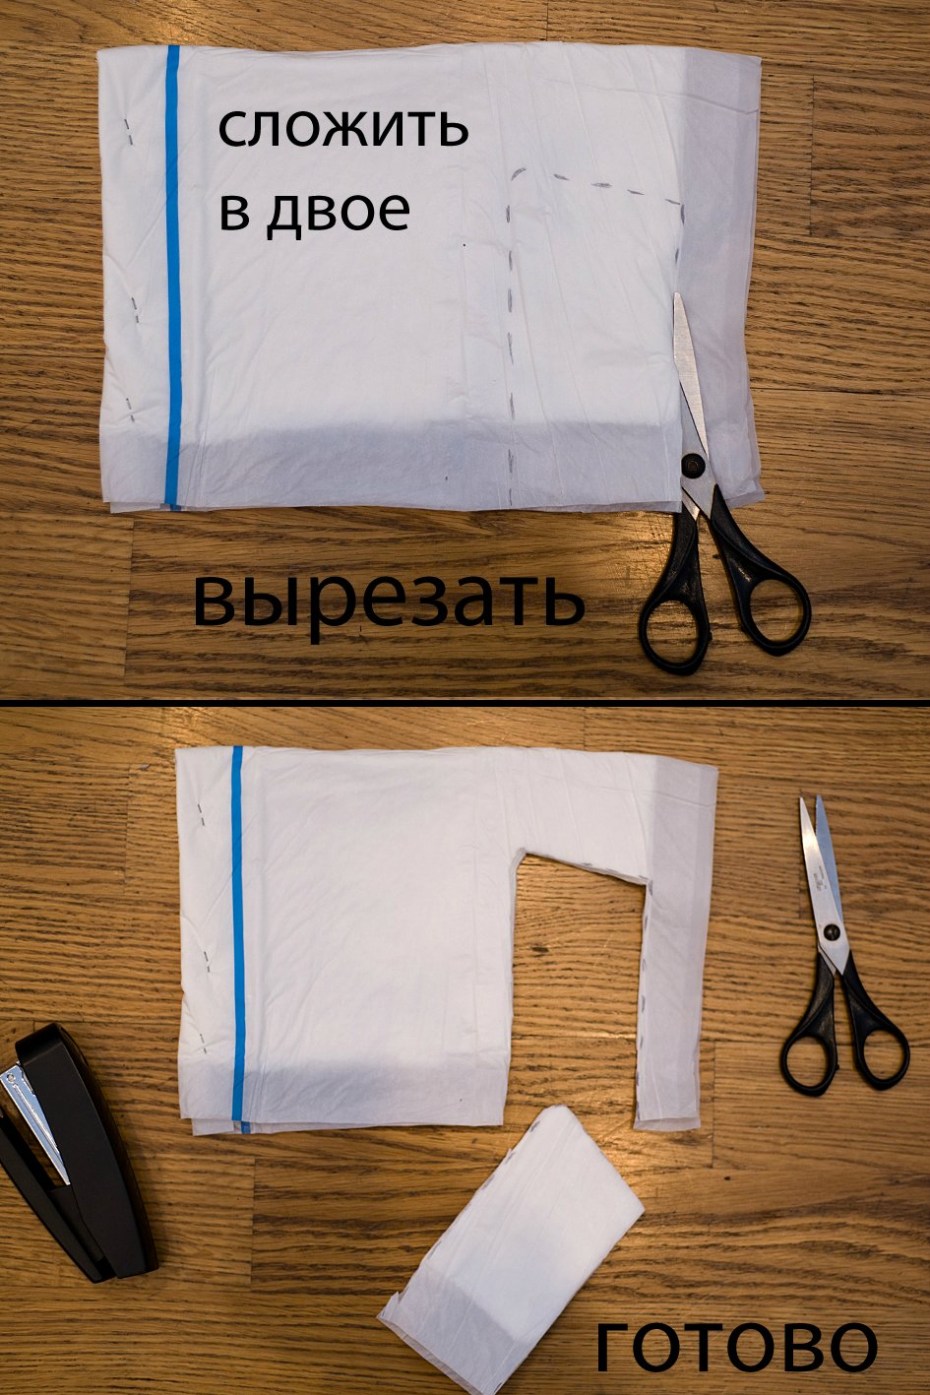 Как сделать марлевые подгузники для новорожденных своими руками | WDAY